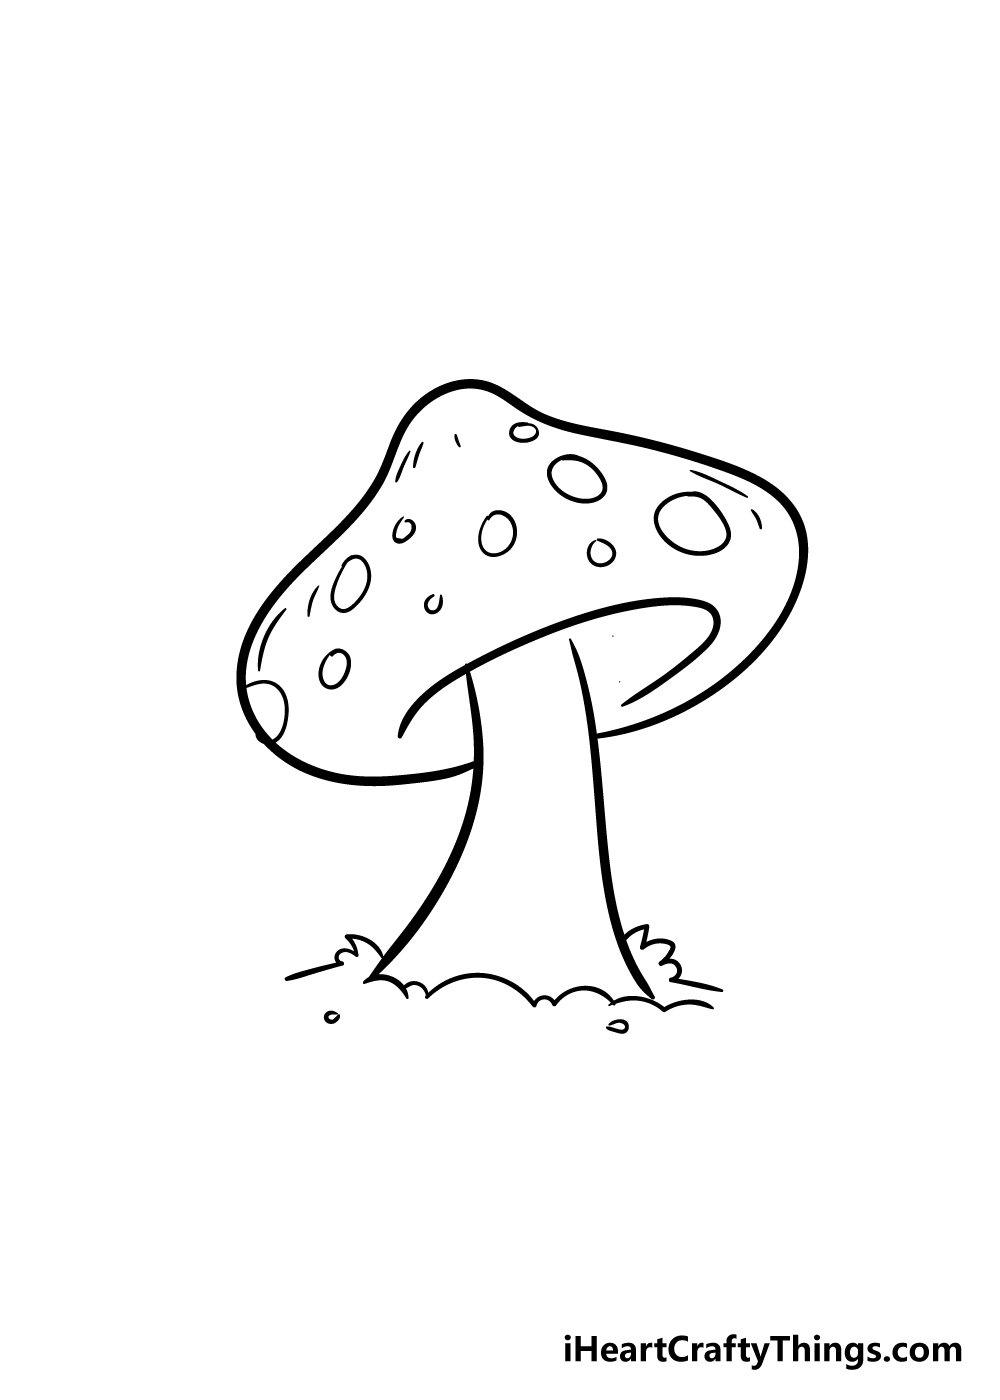 mushroom drawing step 5